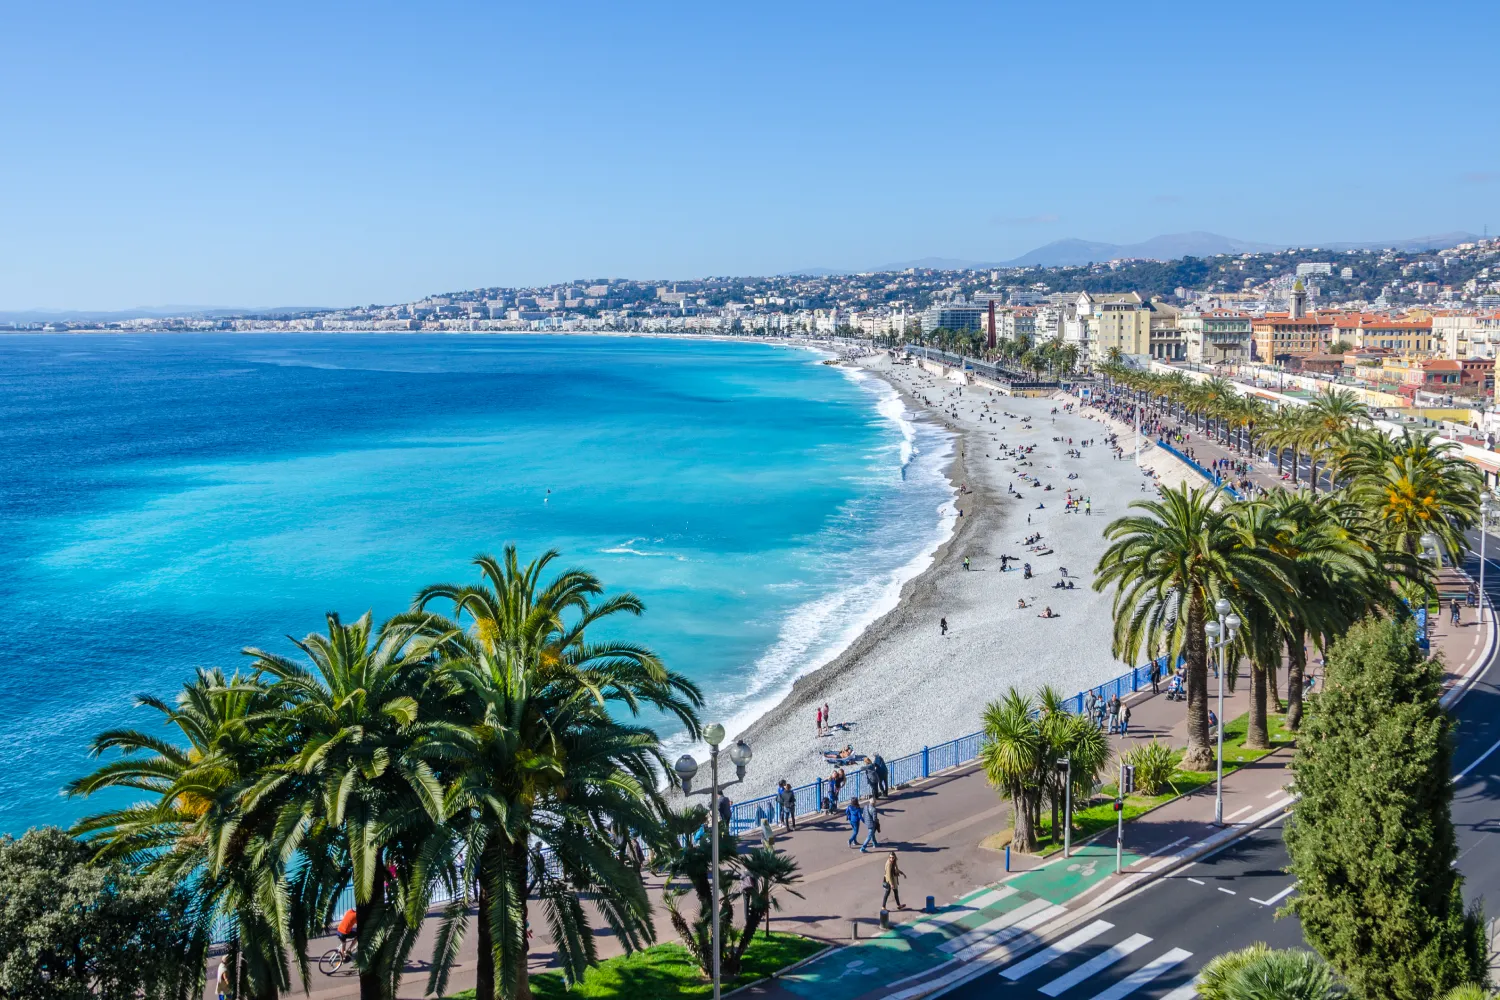 Luftaufnahme der Bucht der Engel in Nizza. Pinien und Menschen, die am Ufer spazieren gehen und sich sonnen